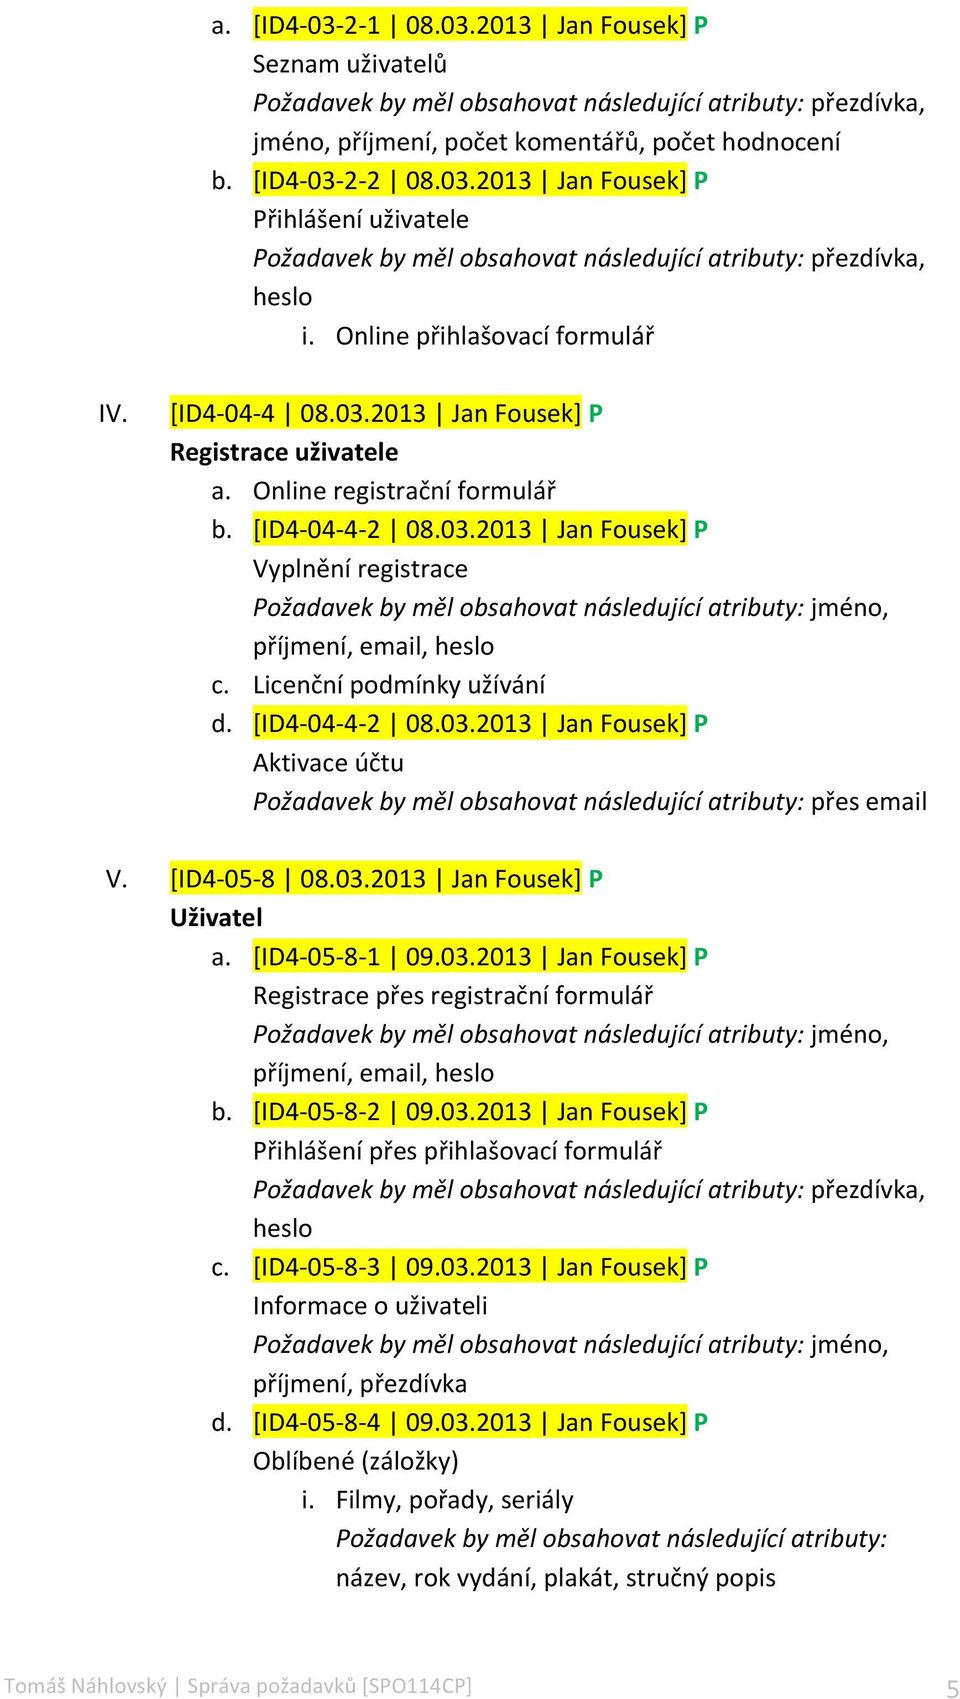 Licenční podmínky užívání d. [ID4-04- 4-2 08.03.2013 Jan Fousek] P Aktivace účtu Požadavek by měl obsahovat následující atributy: přes email V. [ID4-05- 8 08.03.2013 Jan Fousek] P Uživatel a.